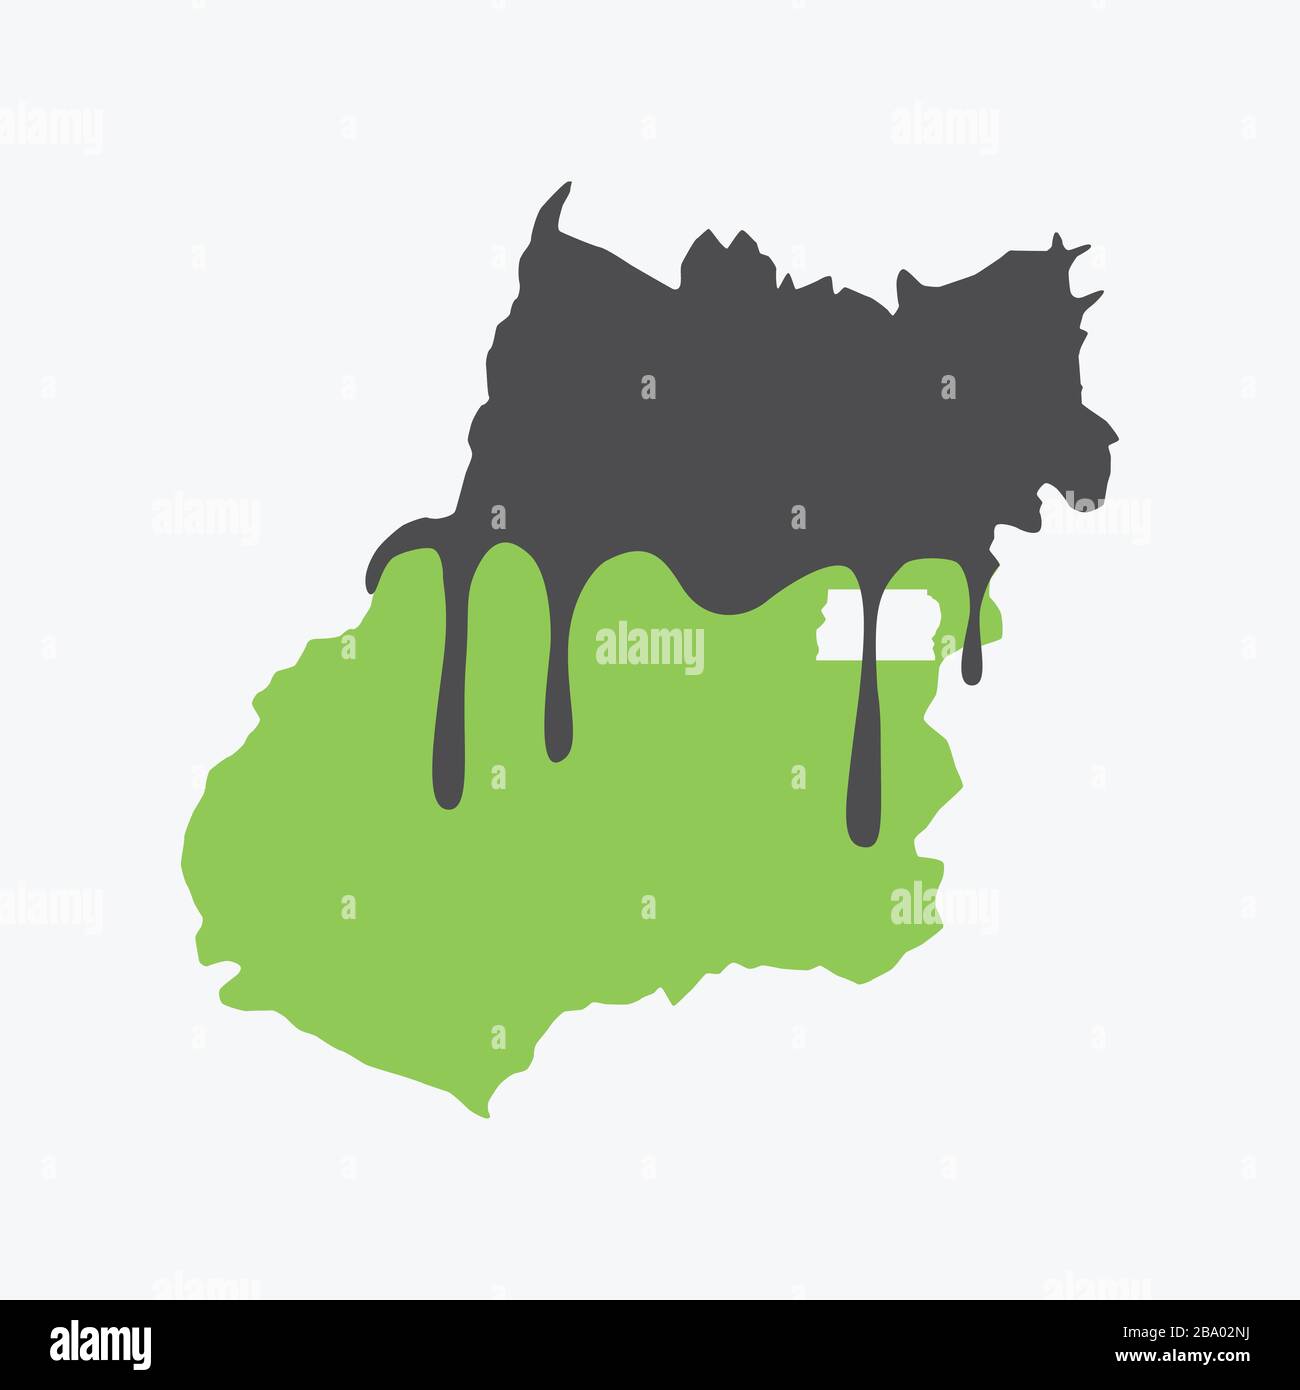 Karte von Goias mit Öl bedeckt. Ölverschmutzung im brasilianischen Bundesstaat. Konzeptionell. Stock Vektor